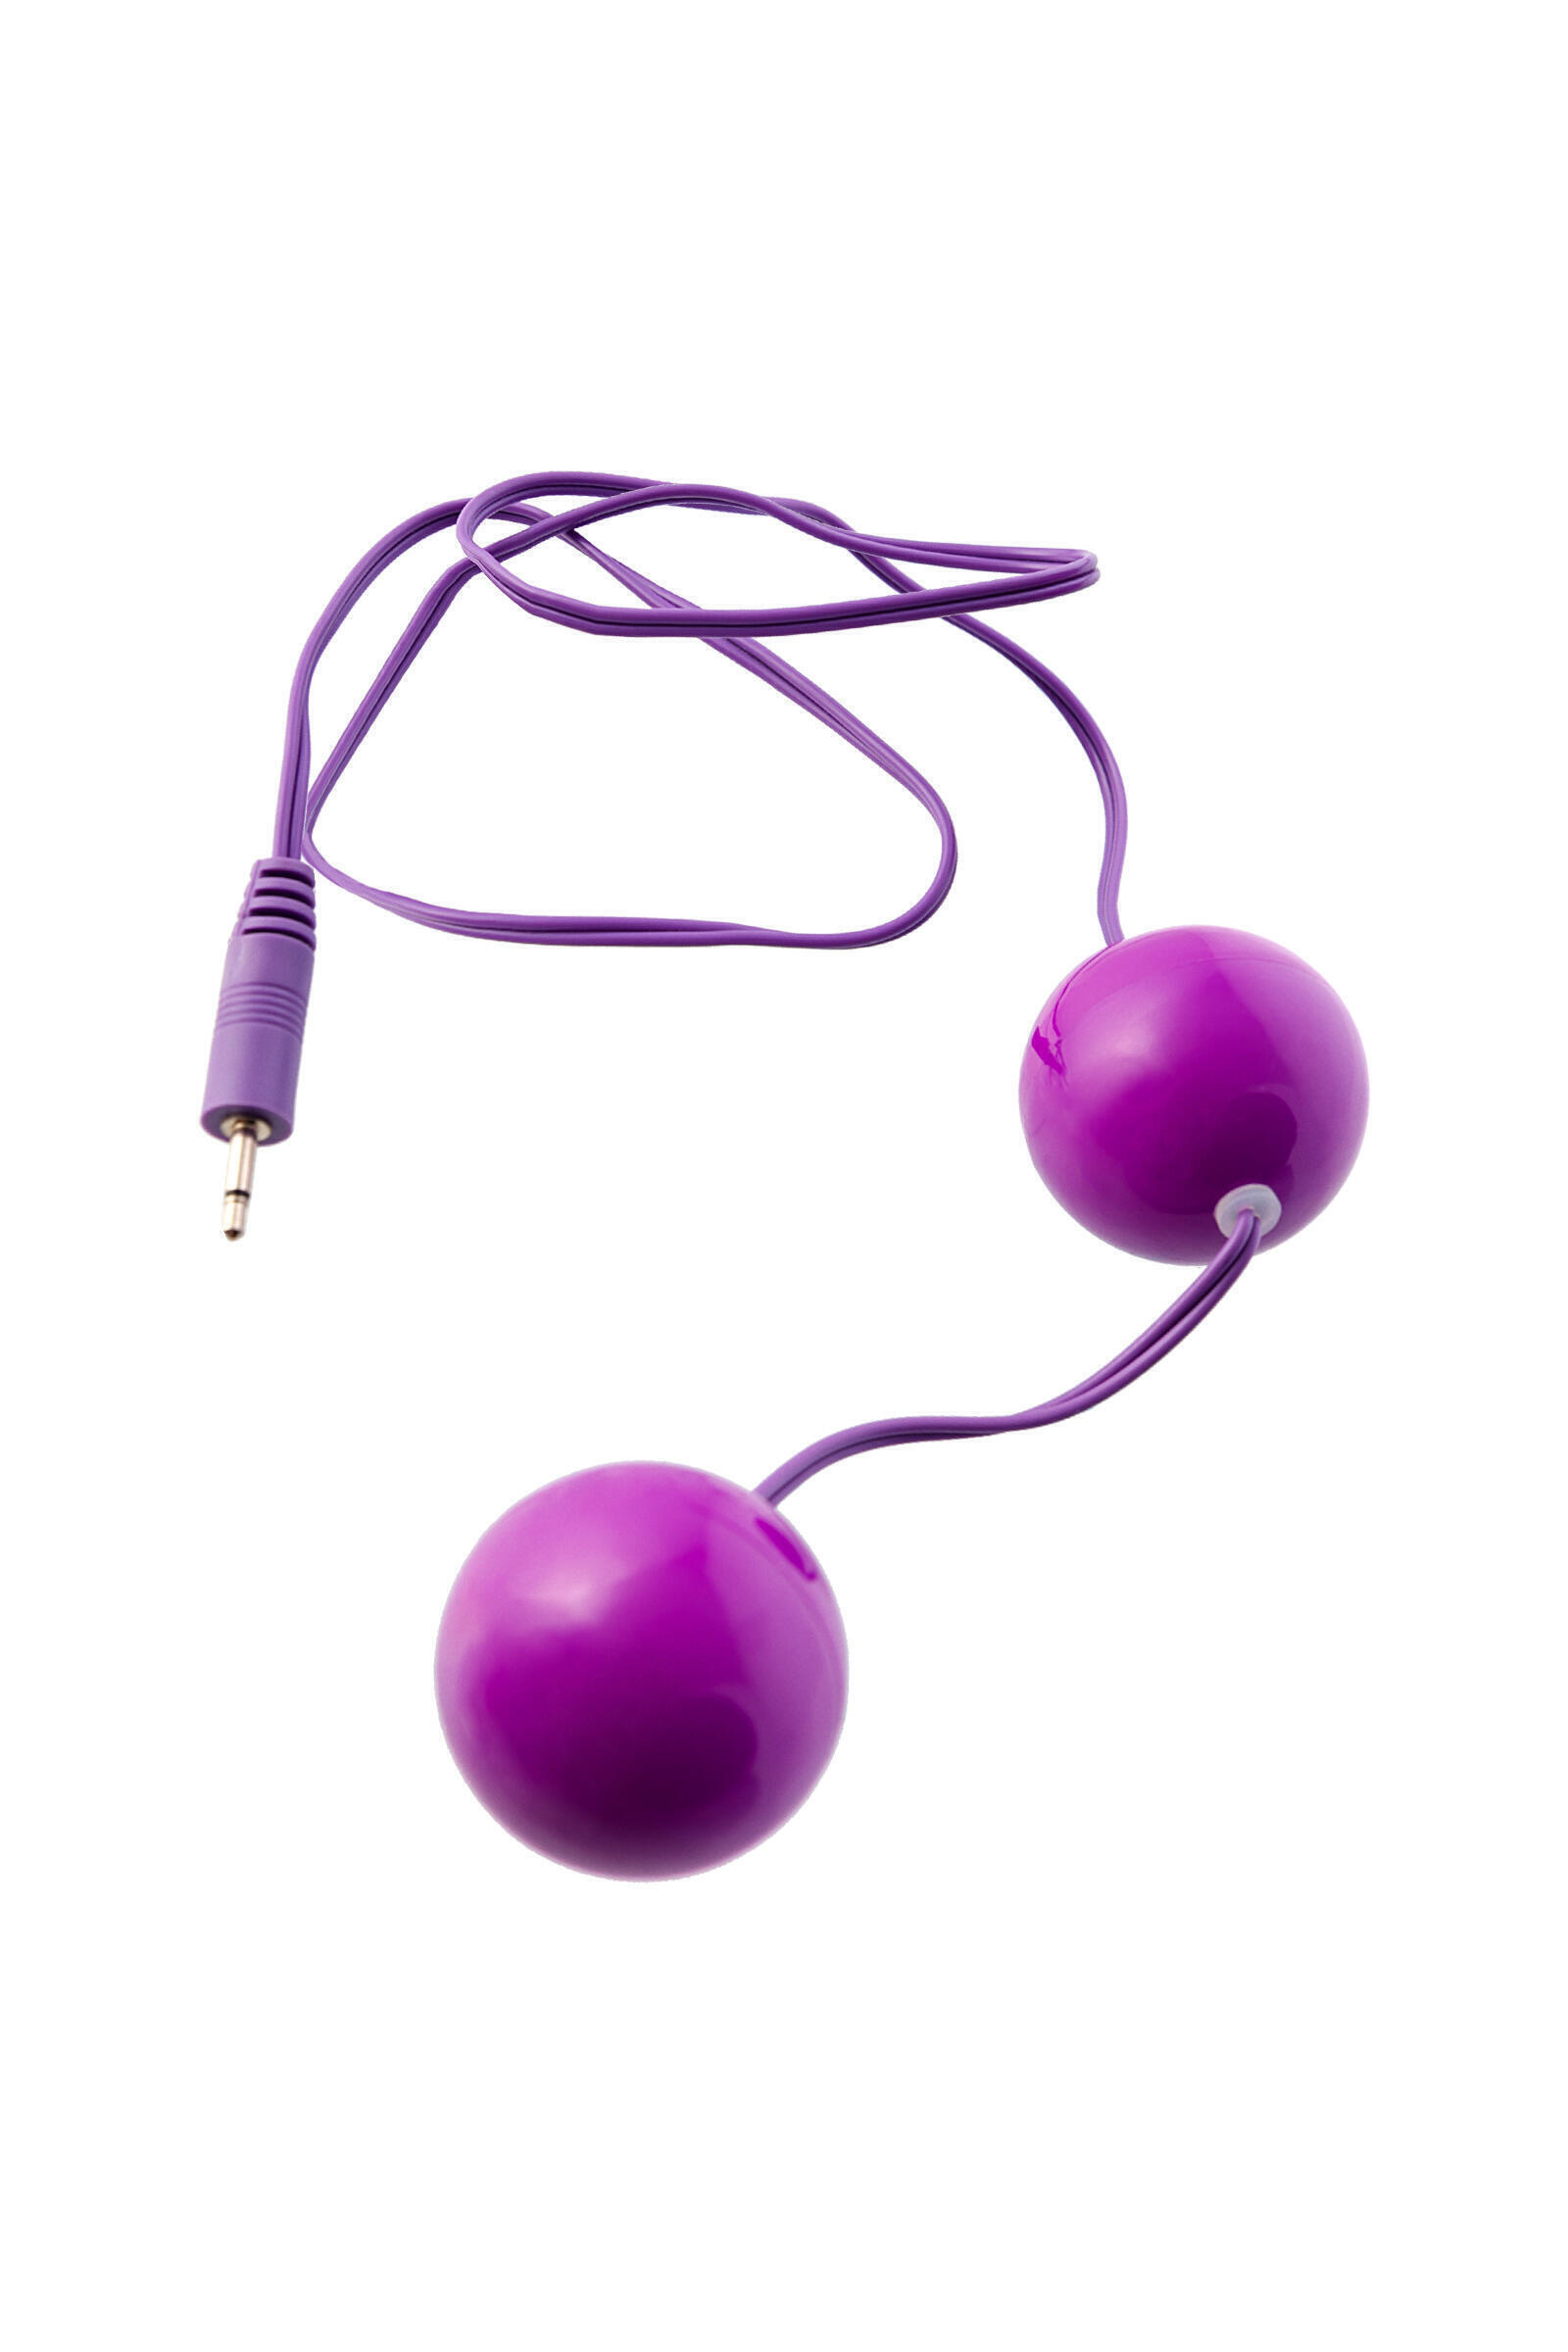 Вагинальные шарики с вибрацией Toyfa Vibro, фиолетовый